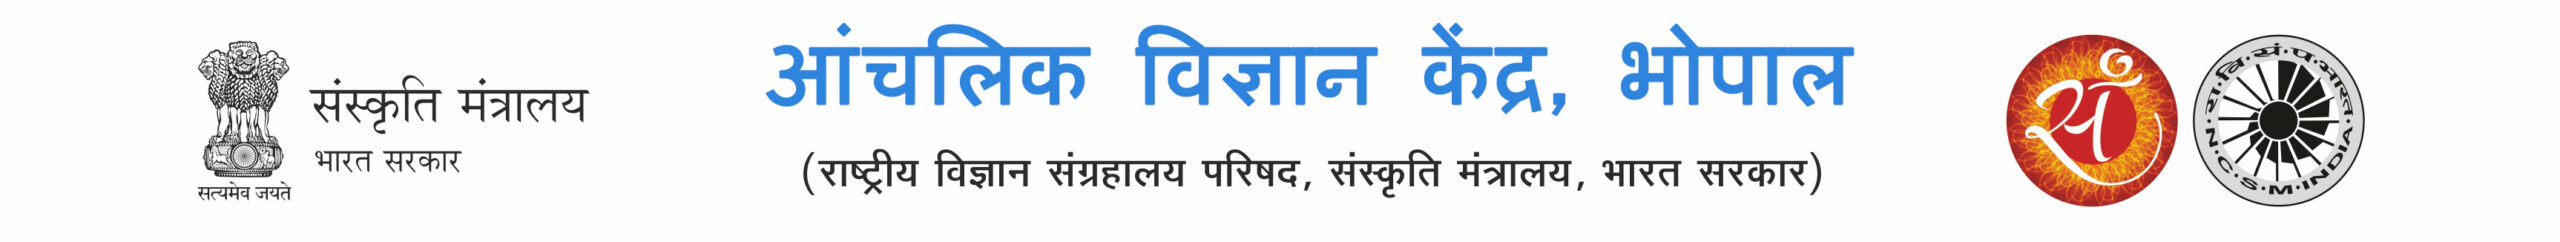 logo-hindi